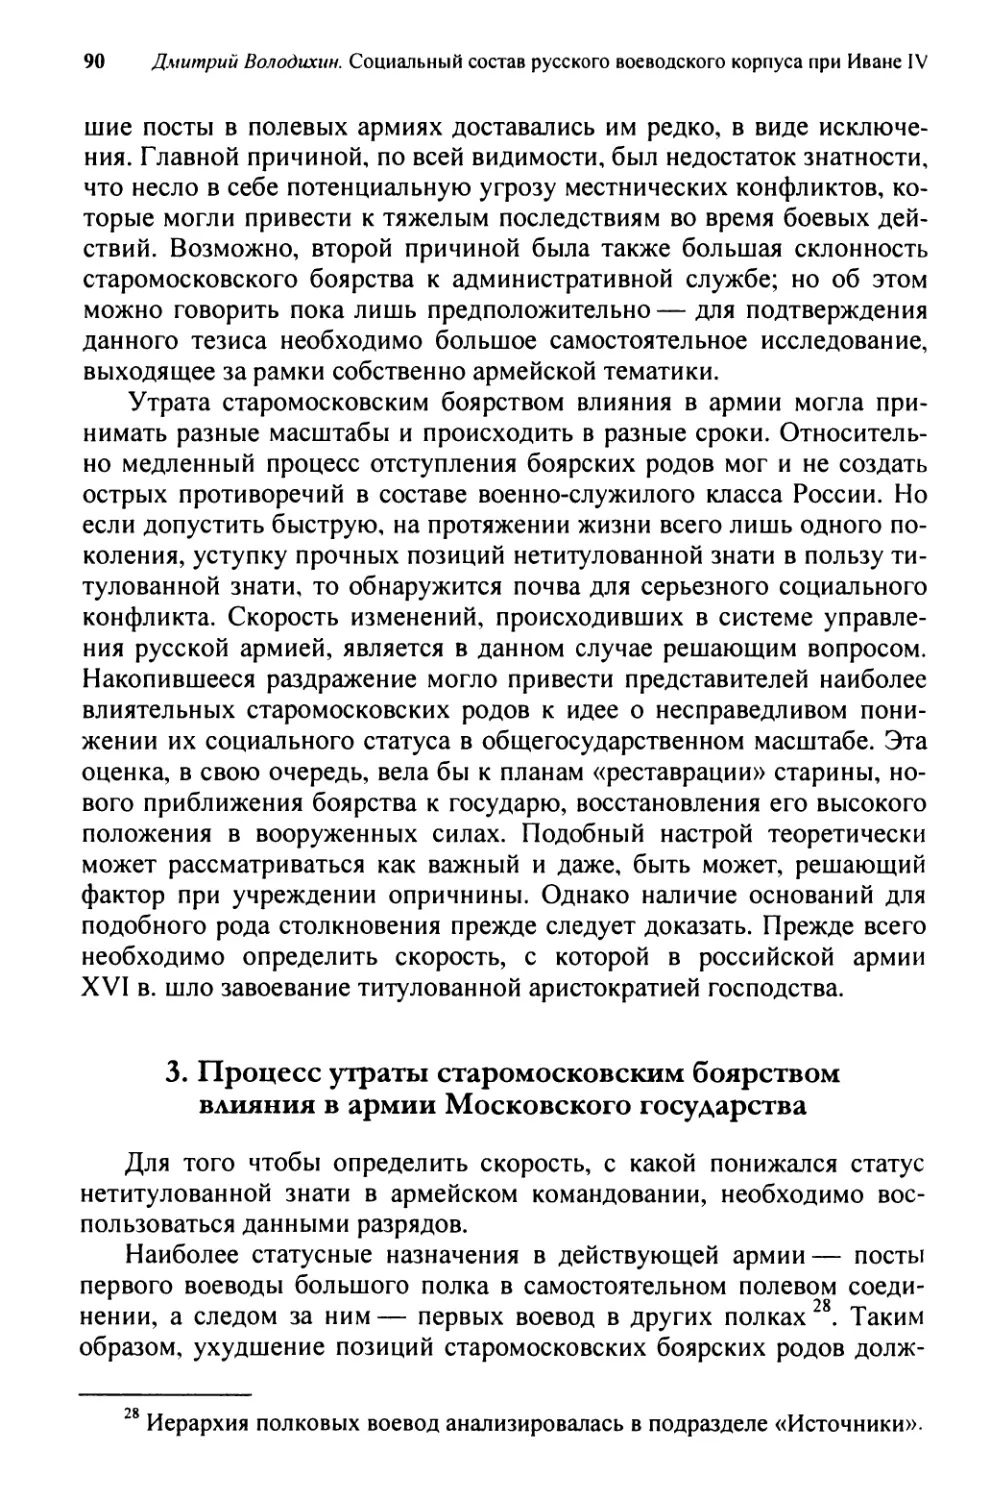 3. Процесс утраты старомосковским боярством влияния в армии Московского государства